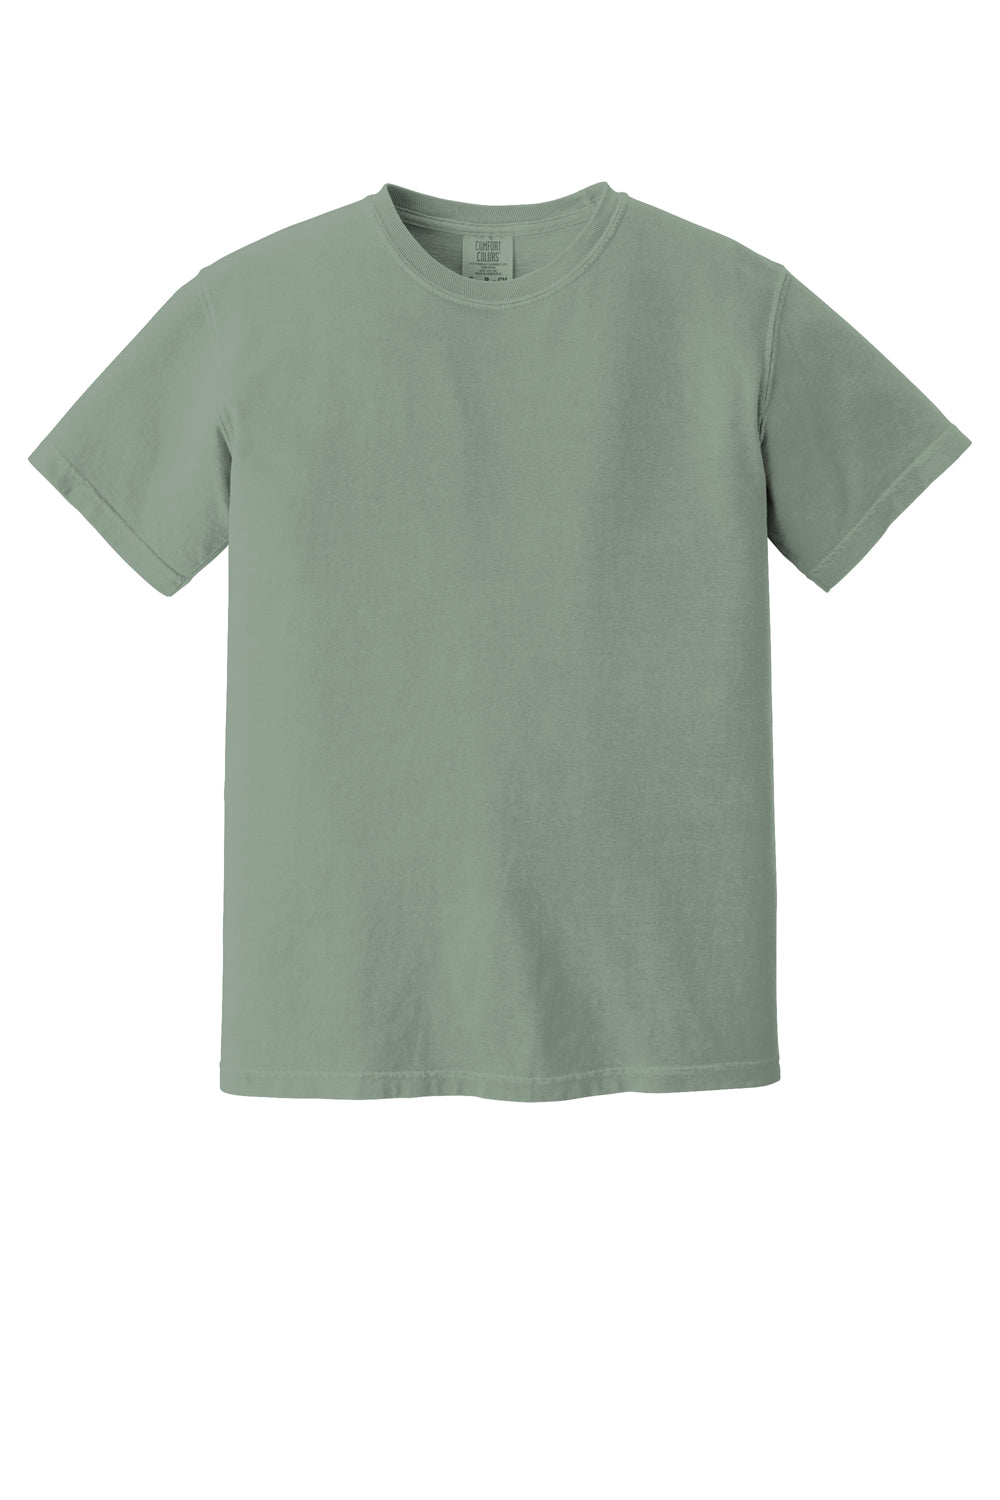 Comfort Colors Mens Short Sleeve Crewneck T-Shirt Bay Green Flat Front